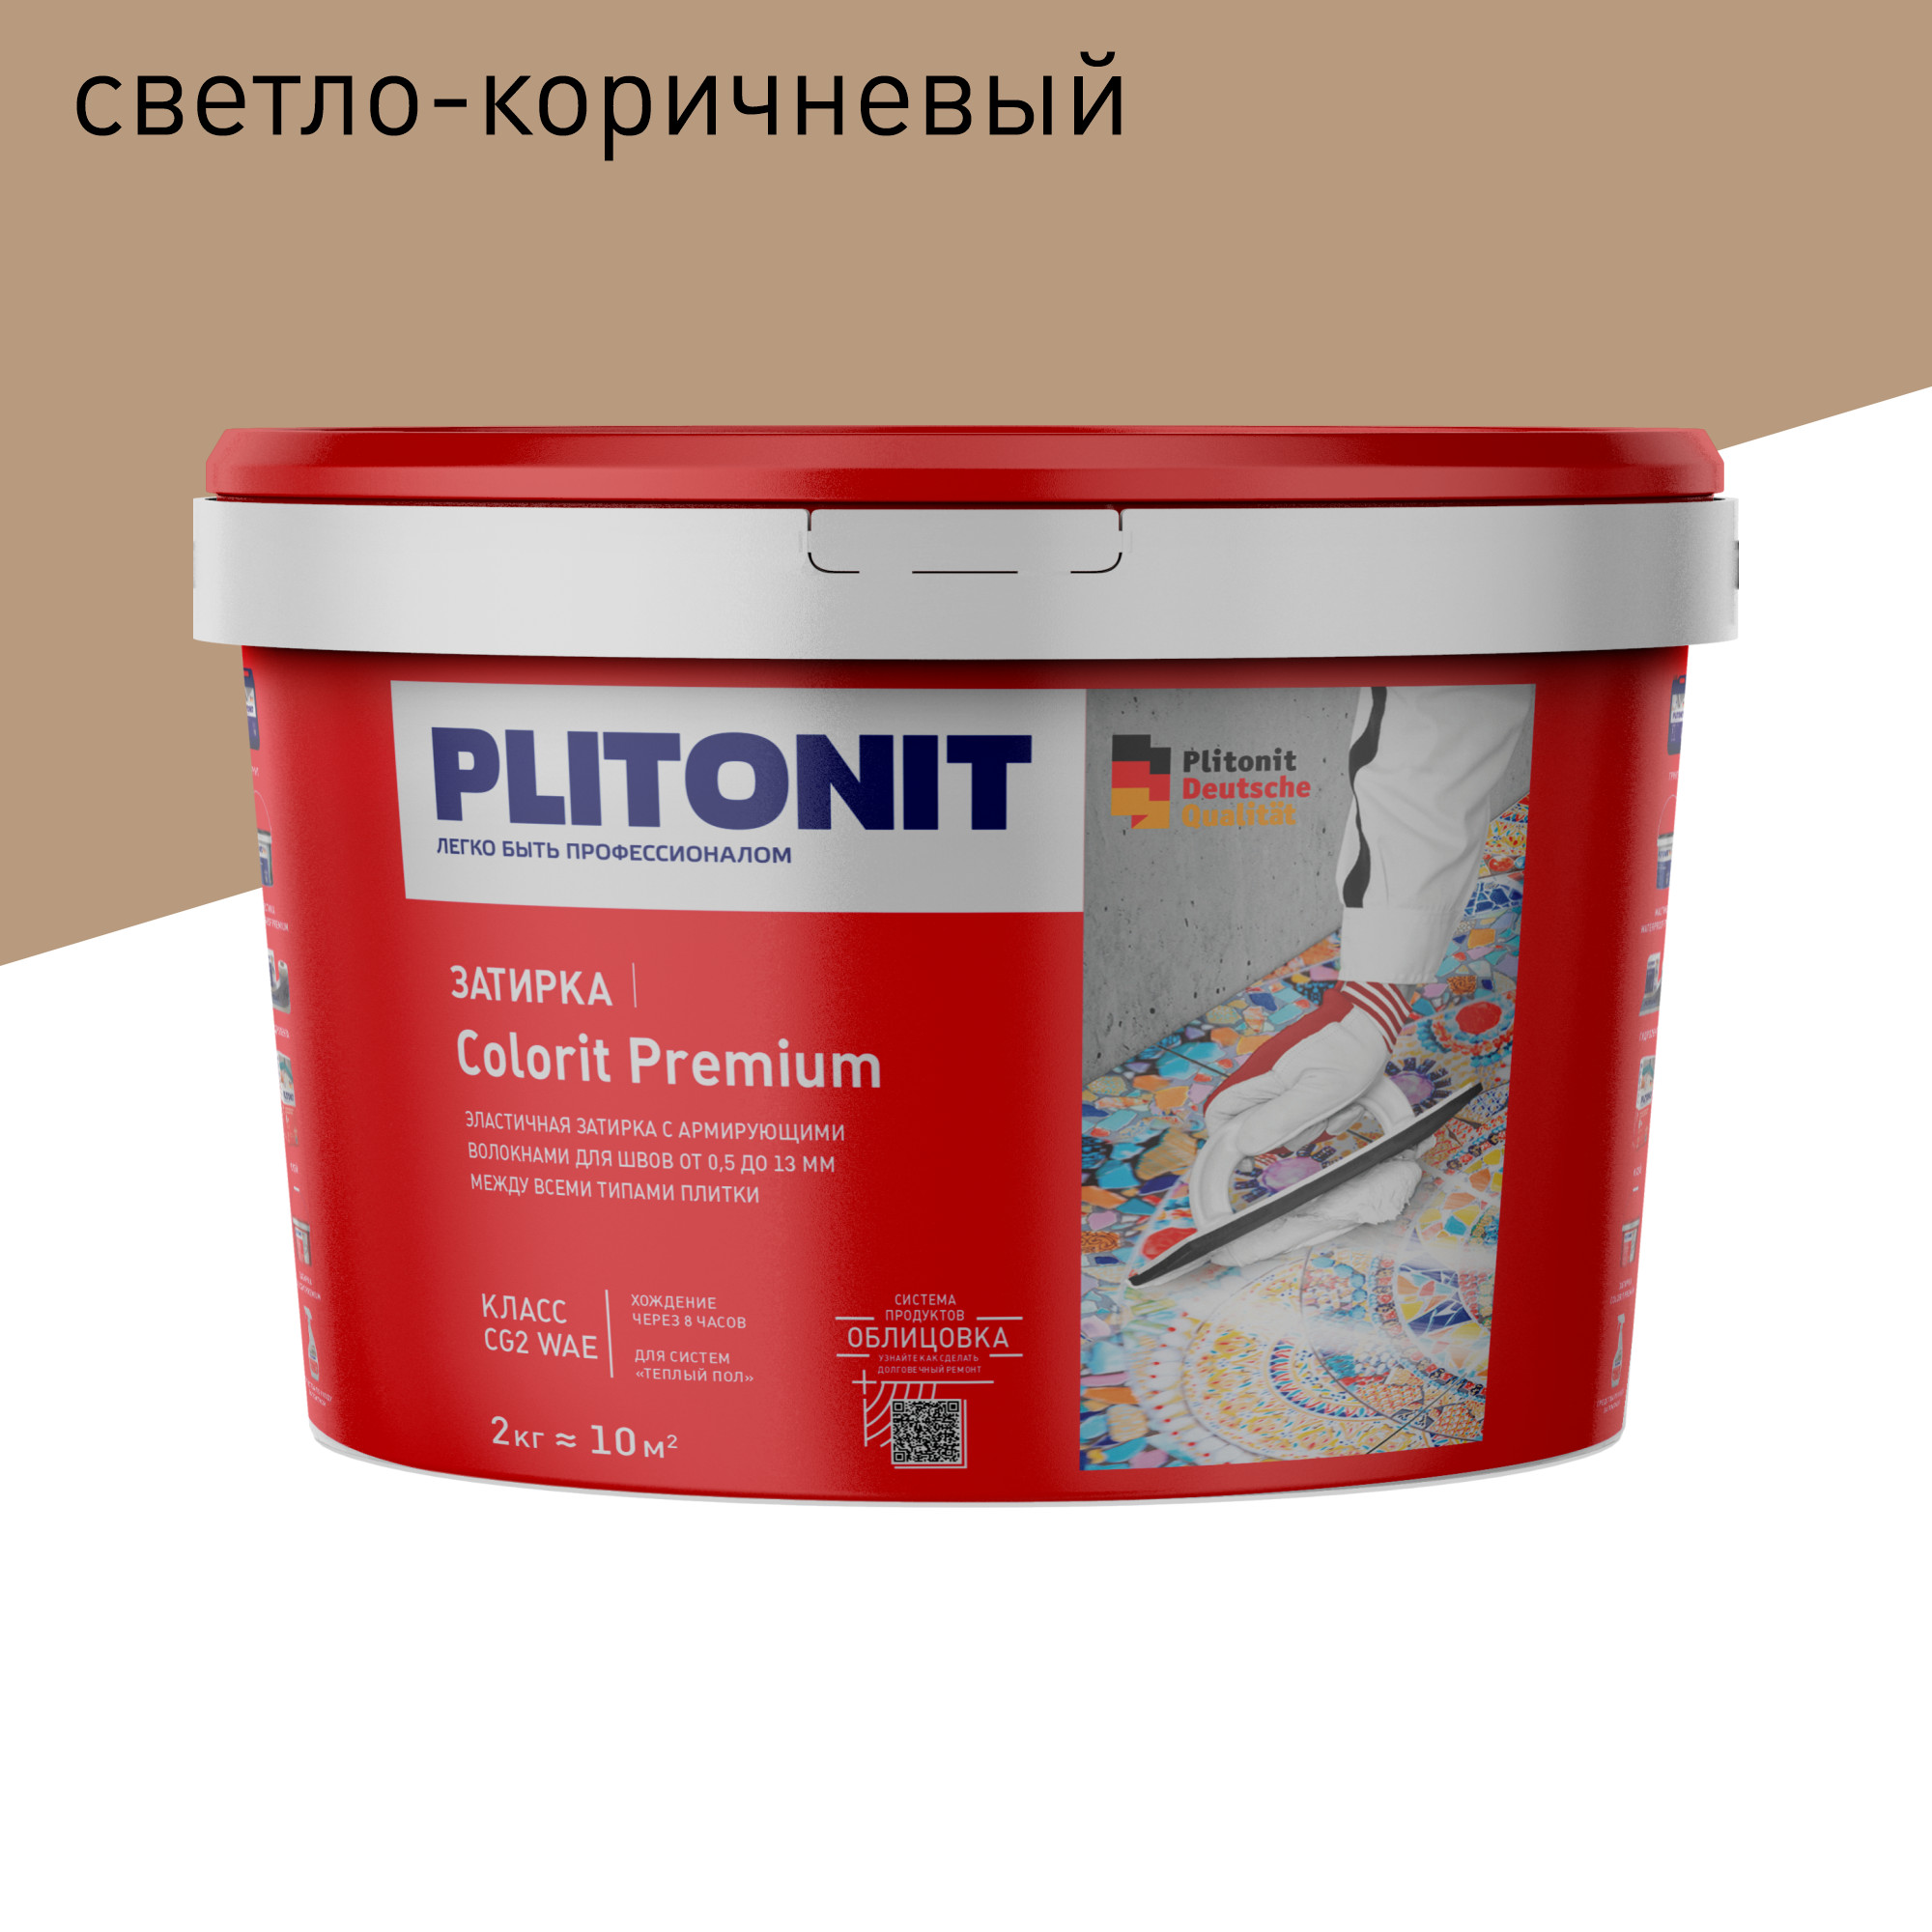 Затирка PLITONIT Colorit Premium светло-коричневая 2 кг petline peq 10 ринговка с прищепкой светло коричневая